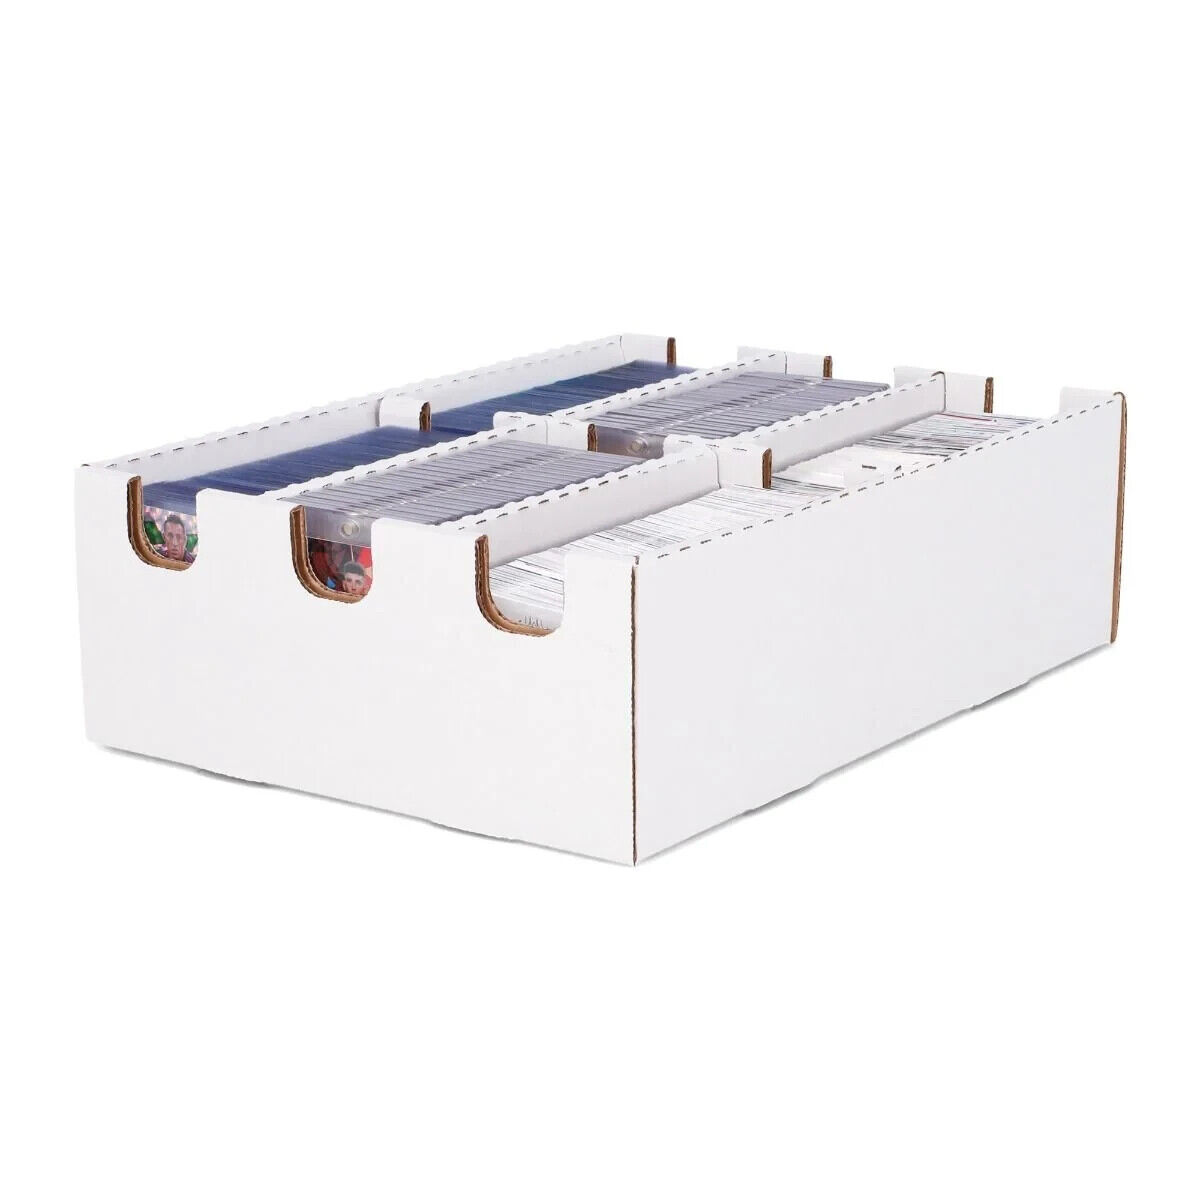 (4x) BCW Cargo Storage Box- 6 Cell 3x2 Corrugated Cardboard Storage Box